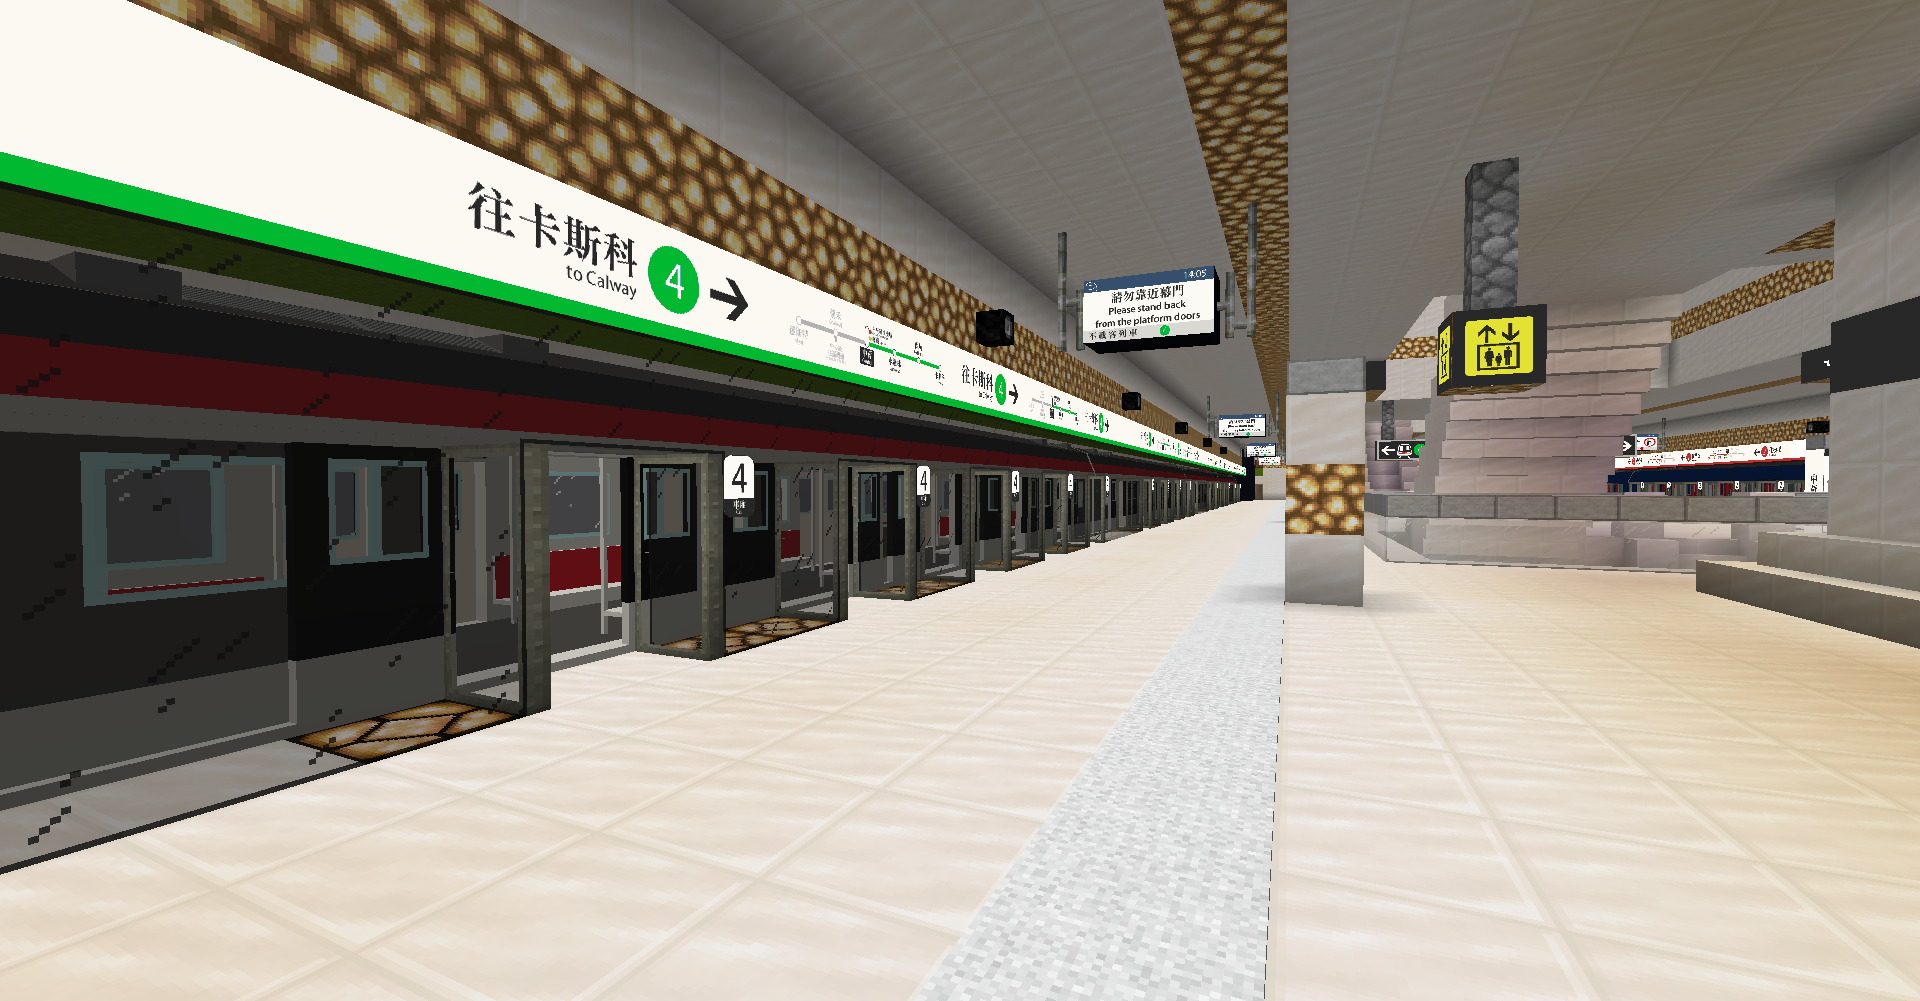 SCR Central Station Platform 4